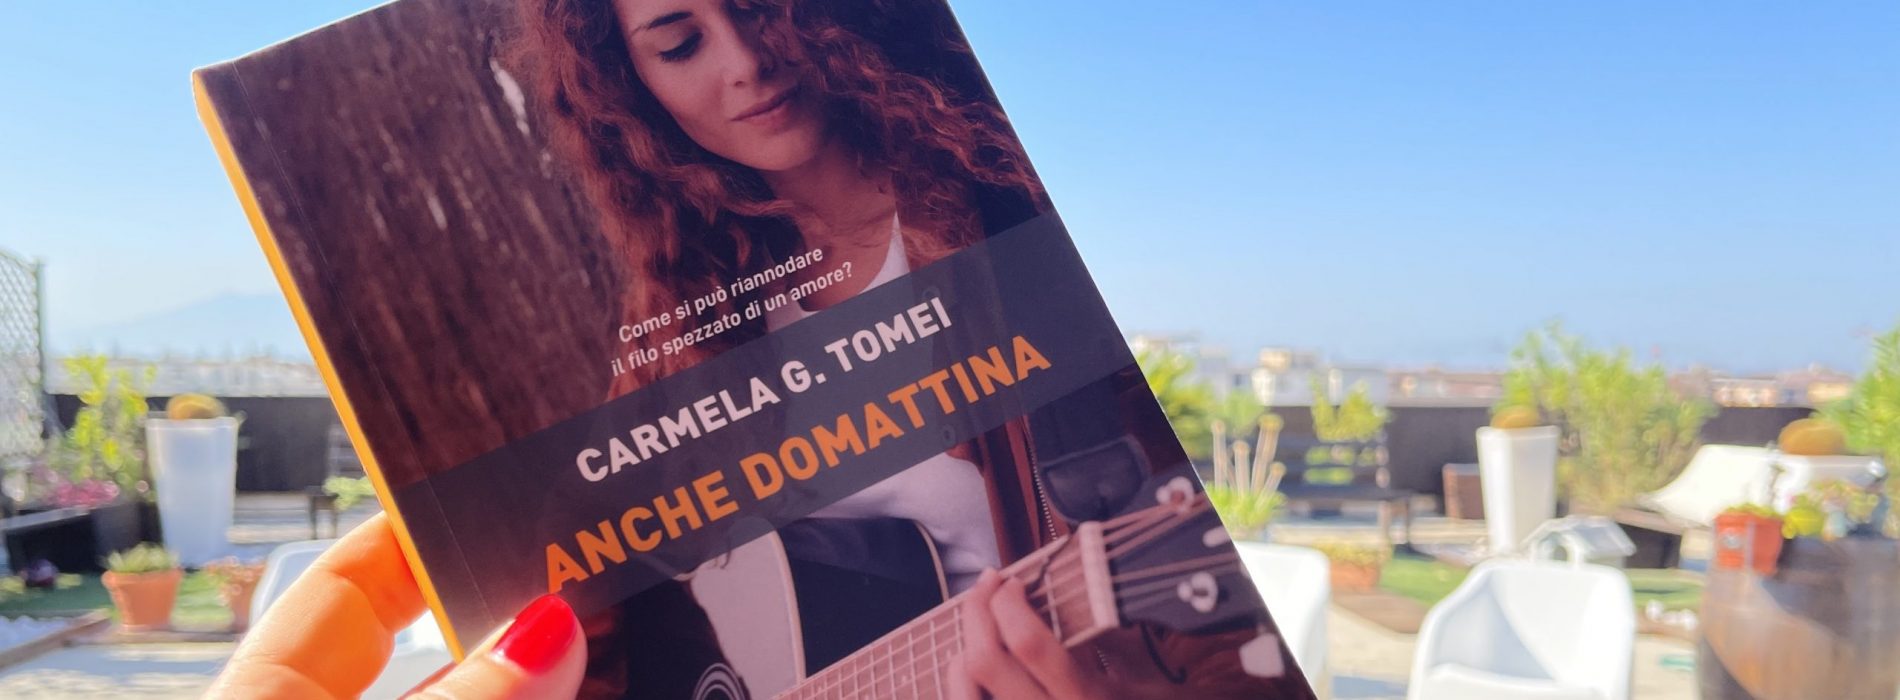 Quando l’amore? “Anche domattina”, il libro di Carmela Tomei